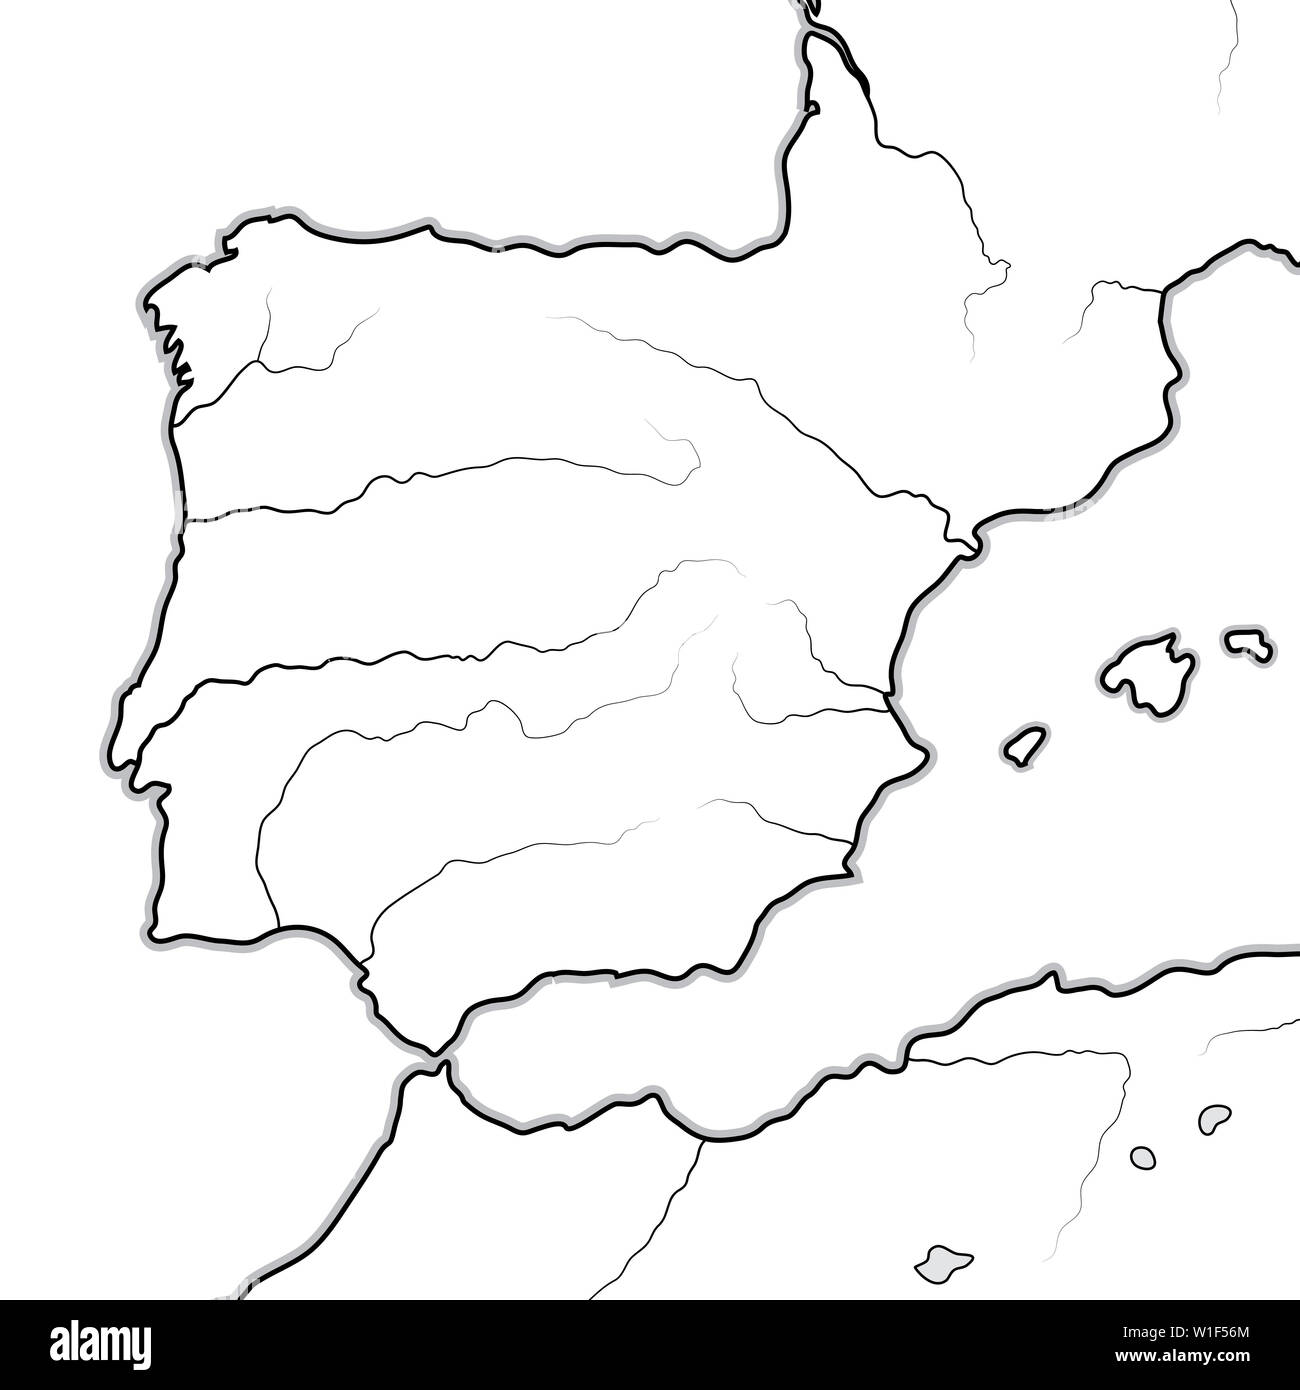 Mappa delle terre Spagnole: Spagna, Portogallo, Iberia, Galizia, di Catalogna, di Valencia, Andalusia, León, Aragón & Castilla, Navarra, Asturie, Pyrénées. Foto Stock